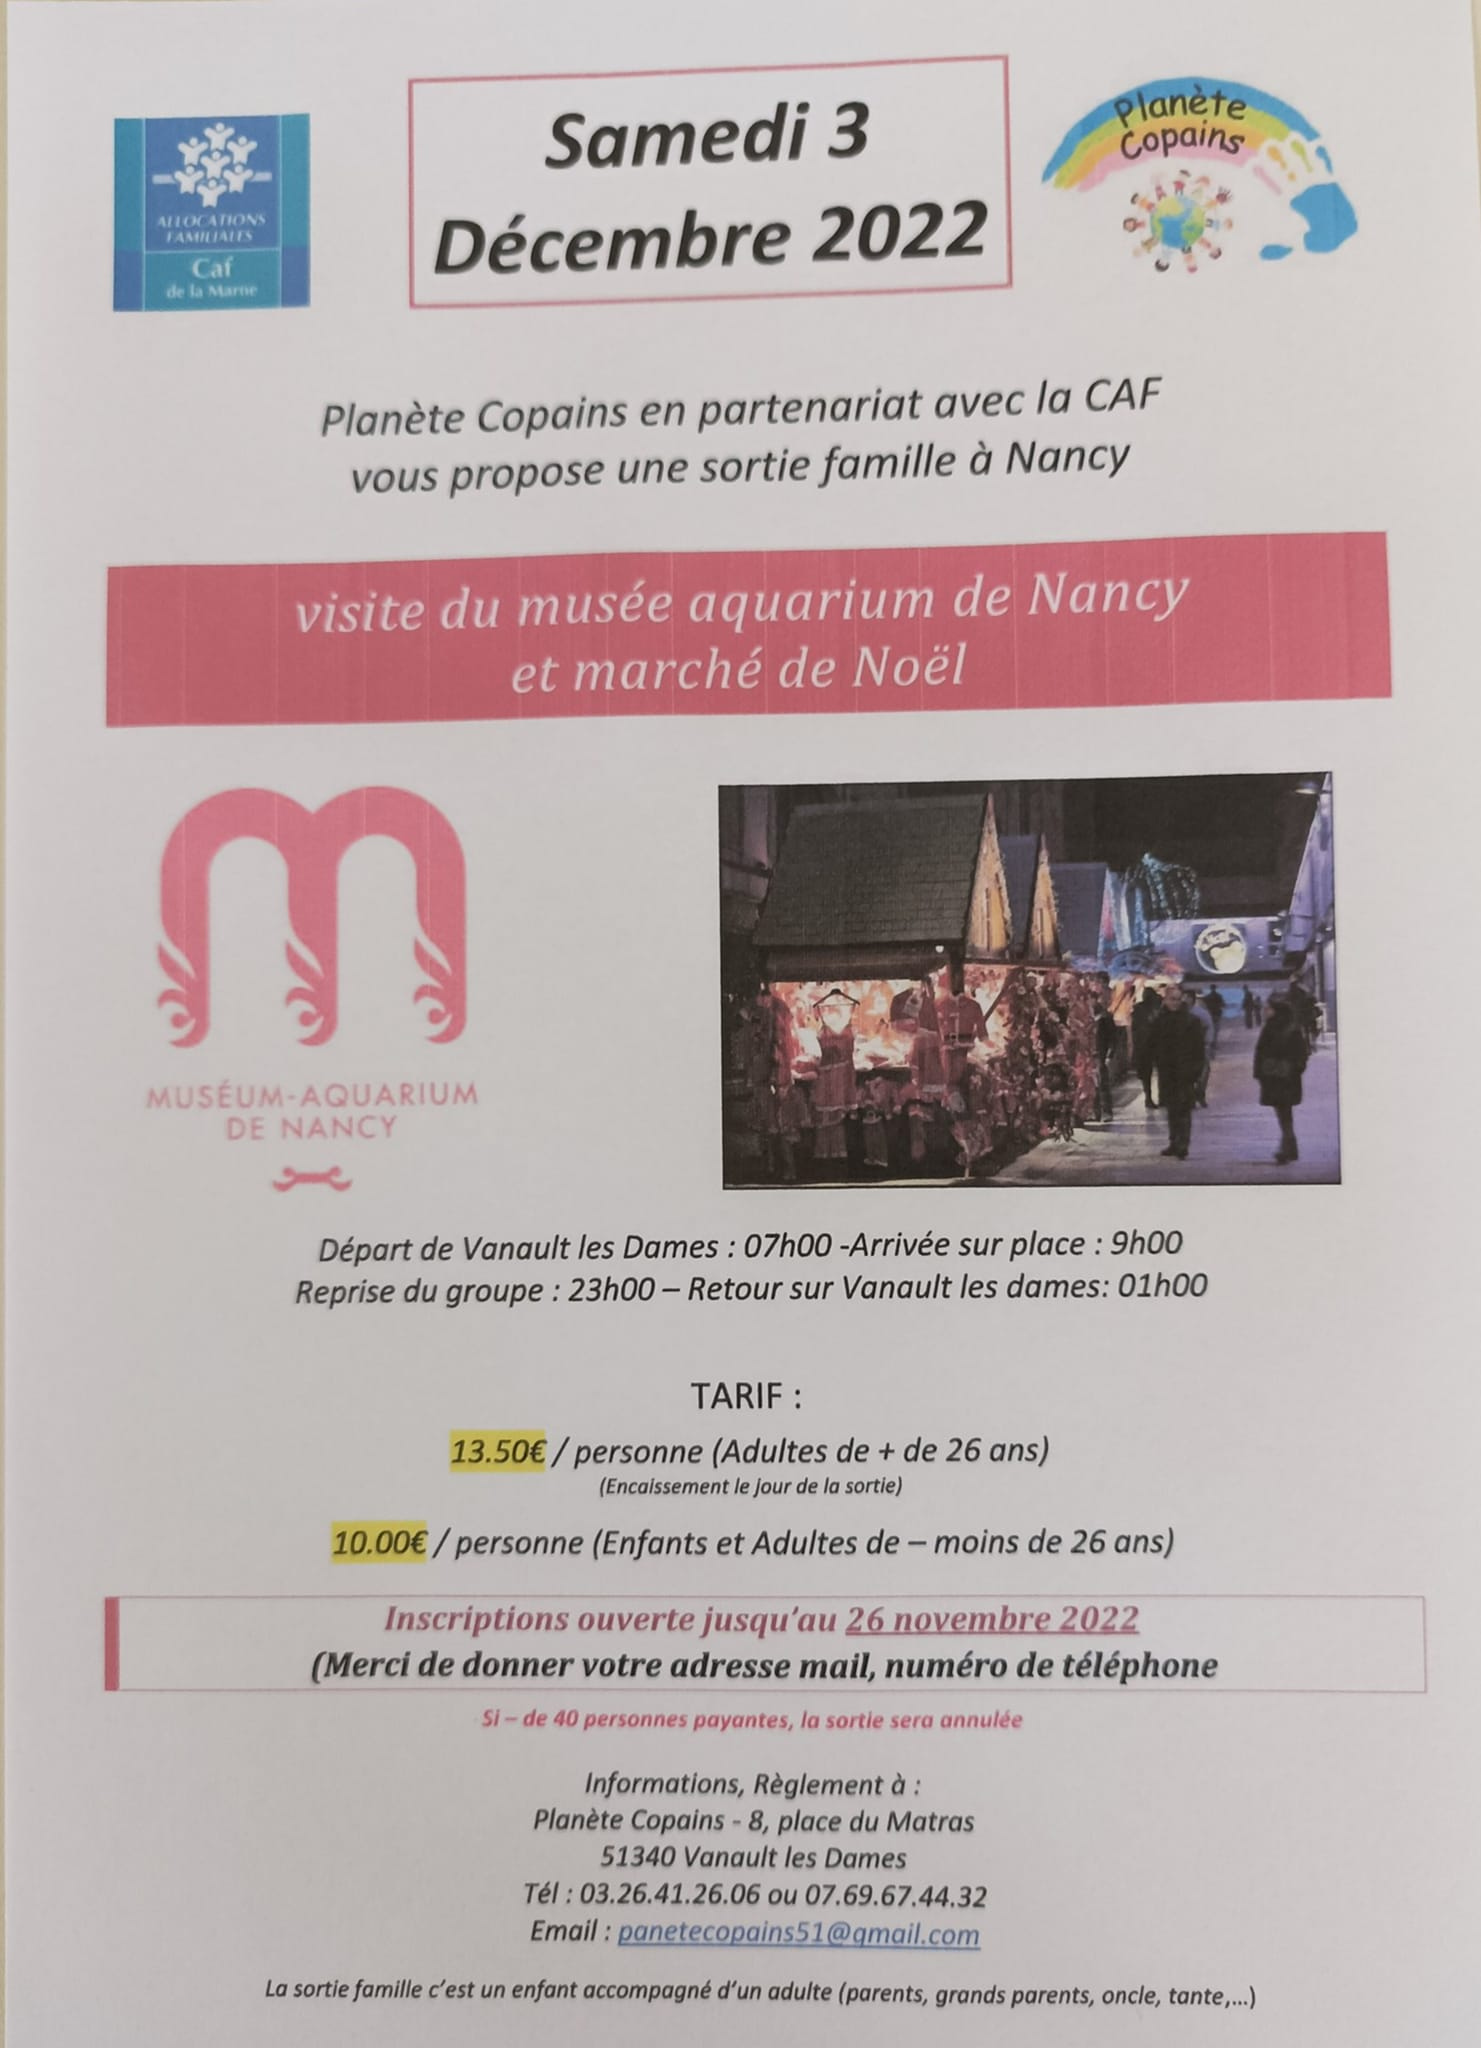 Planète Copains : Visite dumusée aquarium de Nancy et marché de noël le 3 décembre 2022